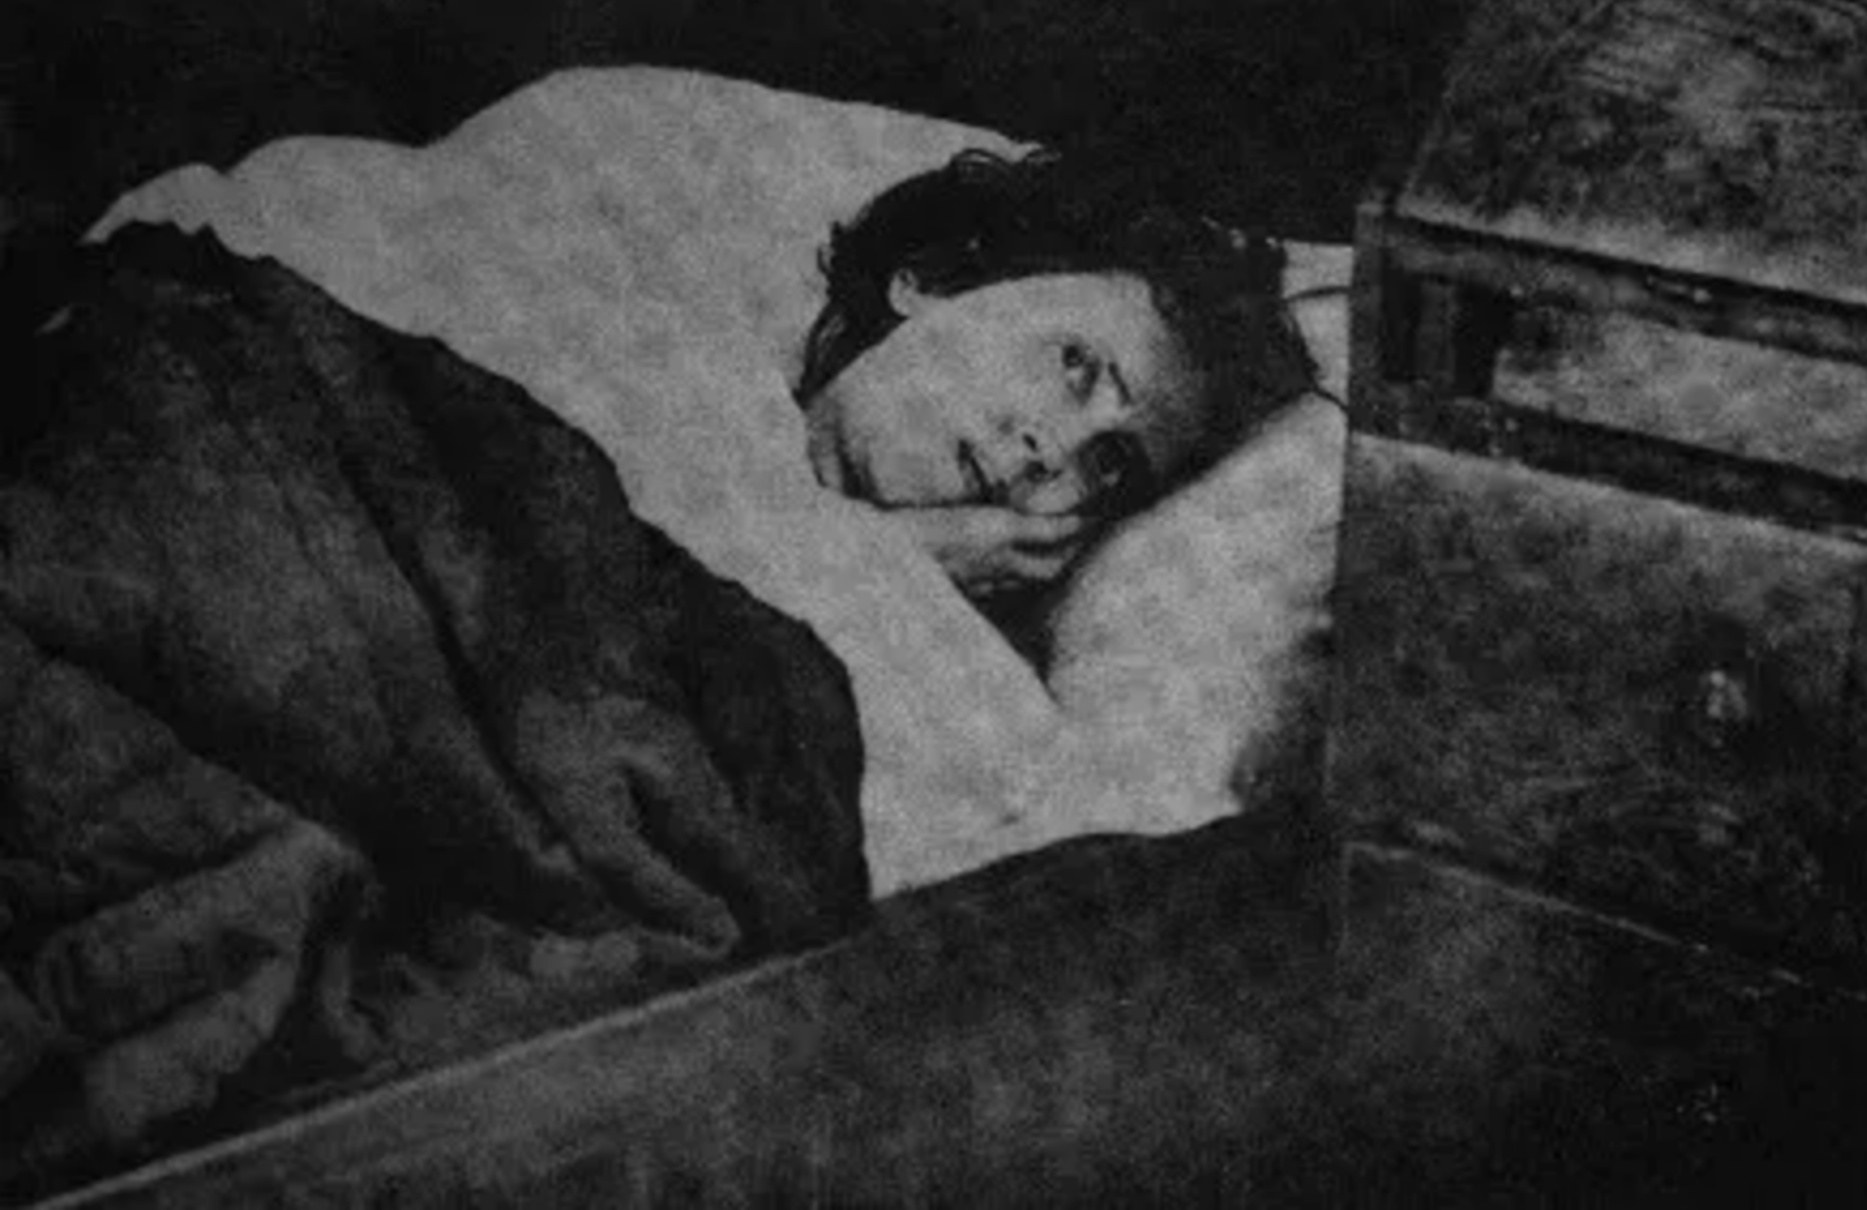 Karolina Olsson (29. října 1861 – 5. dubna 1950), známá také jako „Soverskan på Oknö“ („Spáč z Oknö“), byla švédská žena, která údajně zůstala v hibernaci mezi lety 1876 a 1908 (32 let). To je považováno za nejdelší dobu, po kterou někdo žil tímto způsobem, kdo se pak probudil bez jakýchkoli zbytkových příznaků.